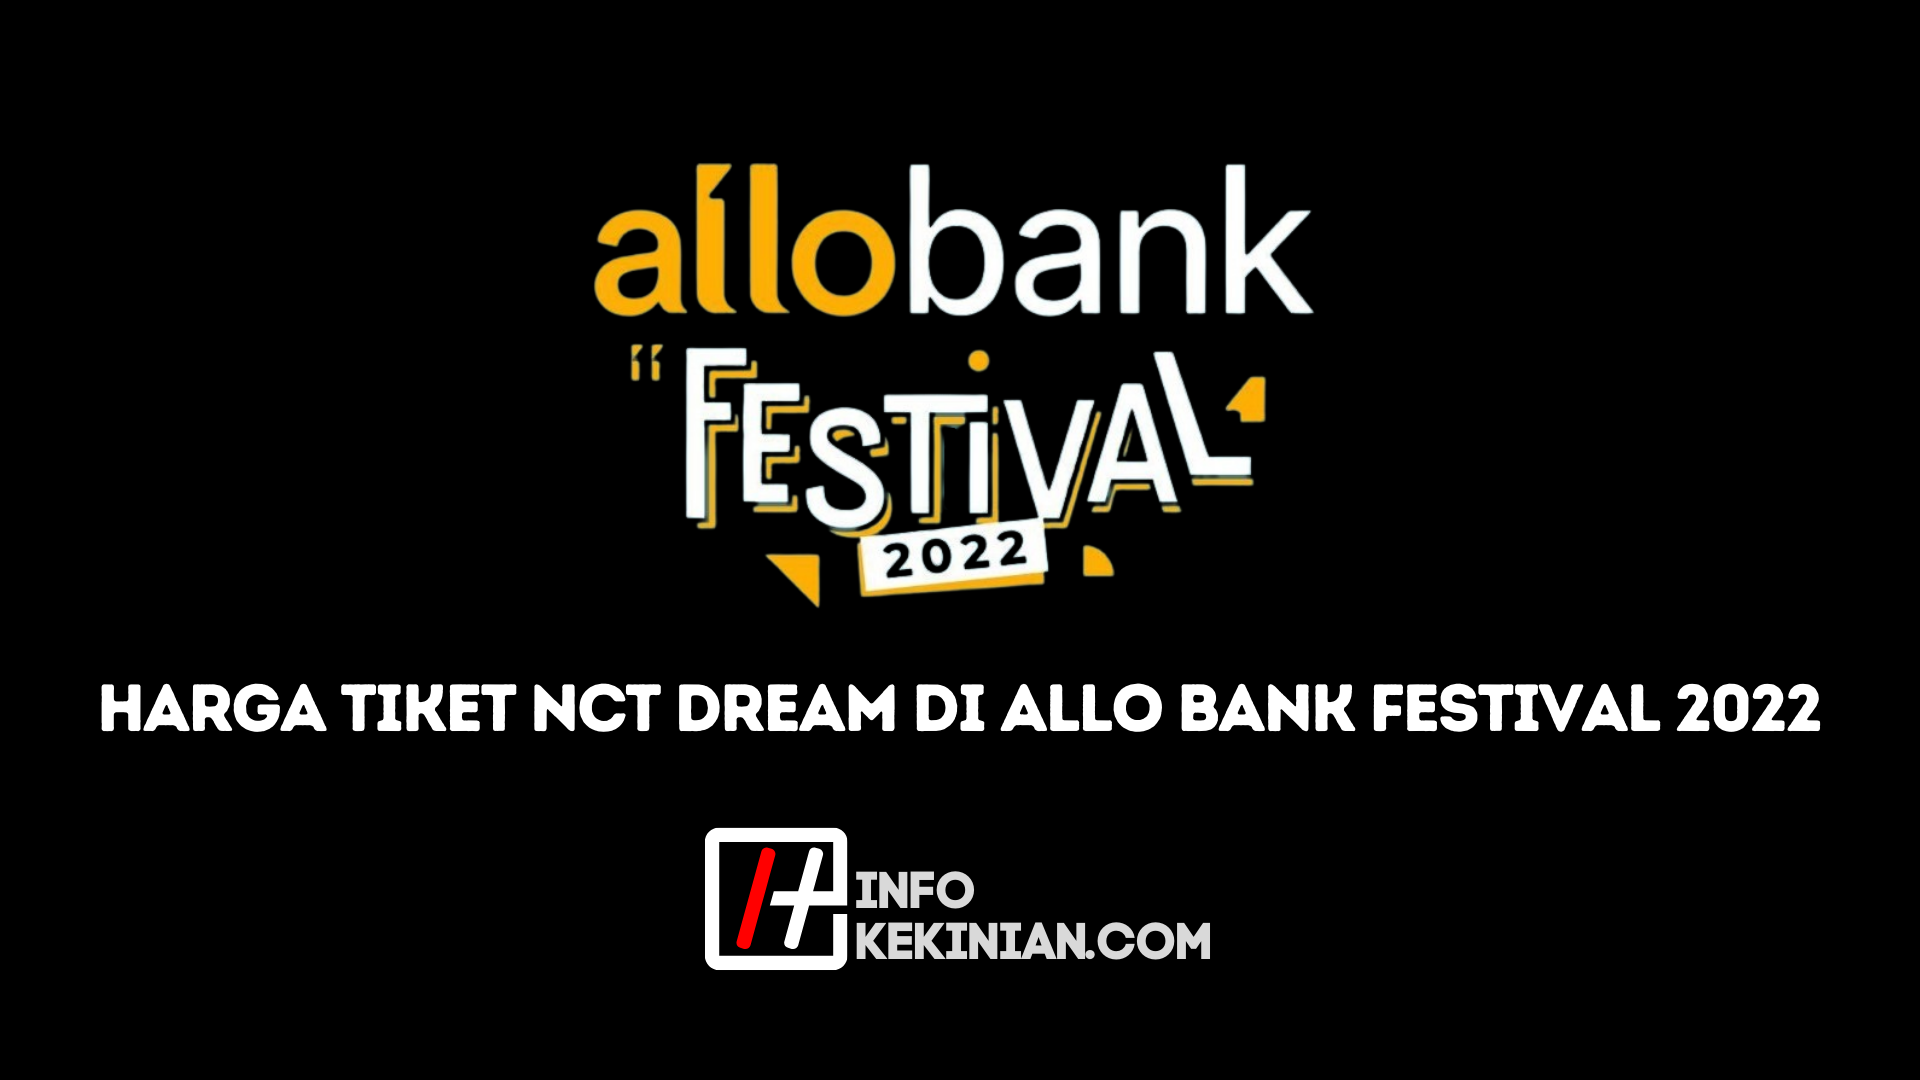 AlloBank Festival 2022